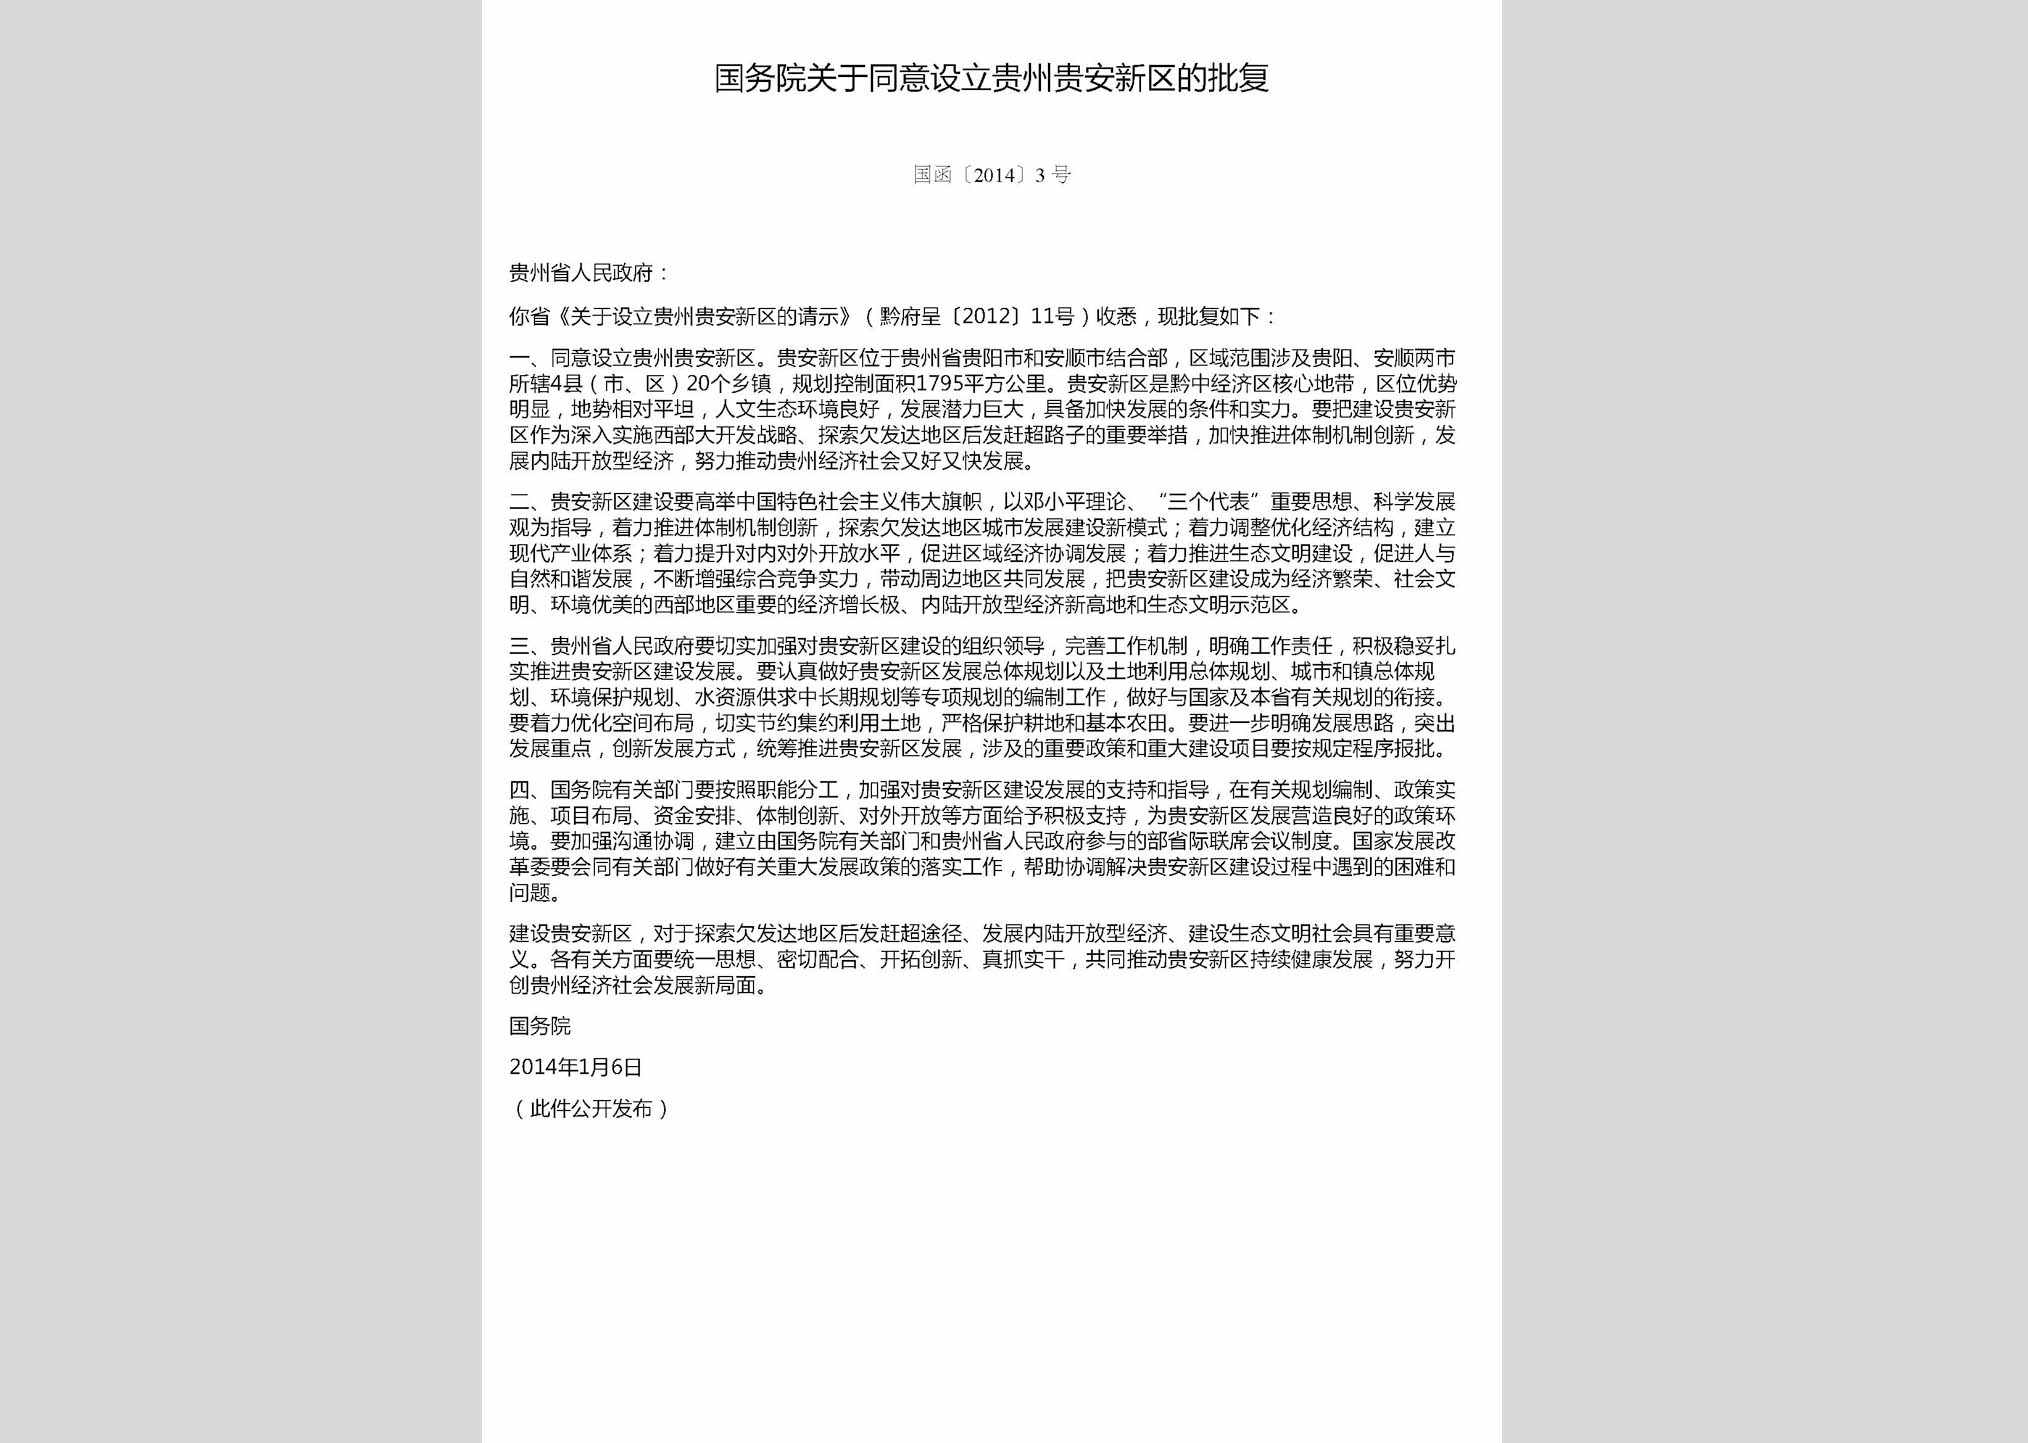 国函[2014]3号：国务院关于同意设立贵州贵安新区的批复